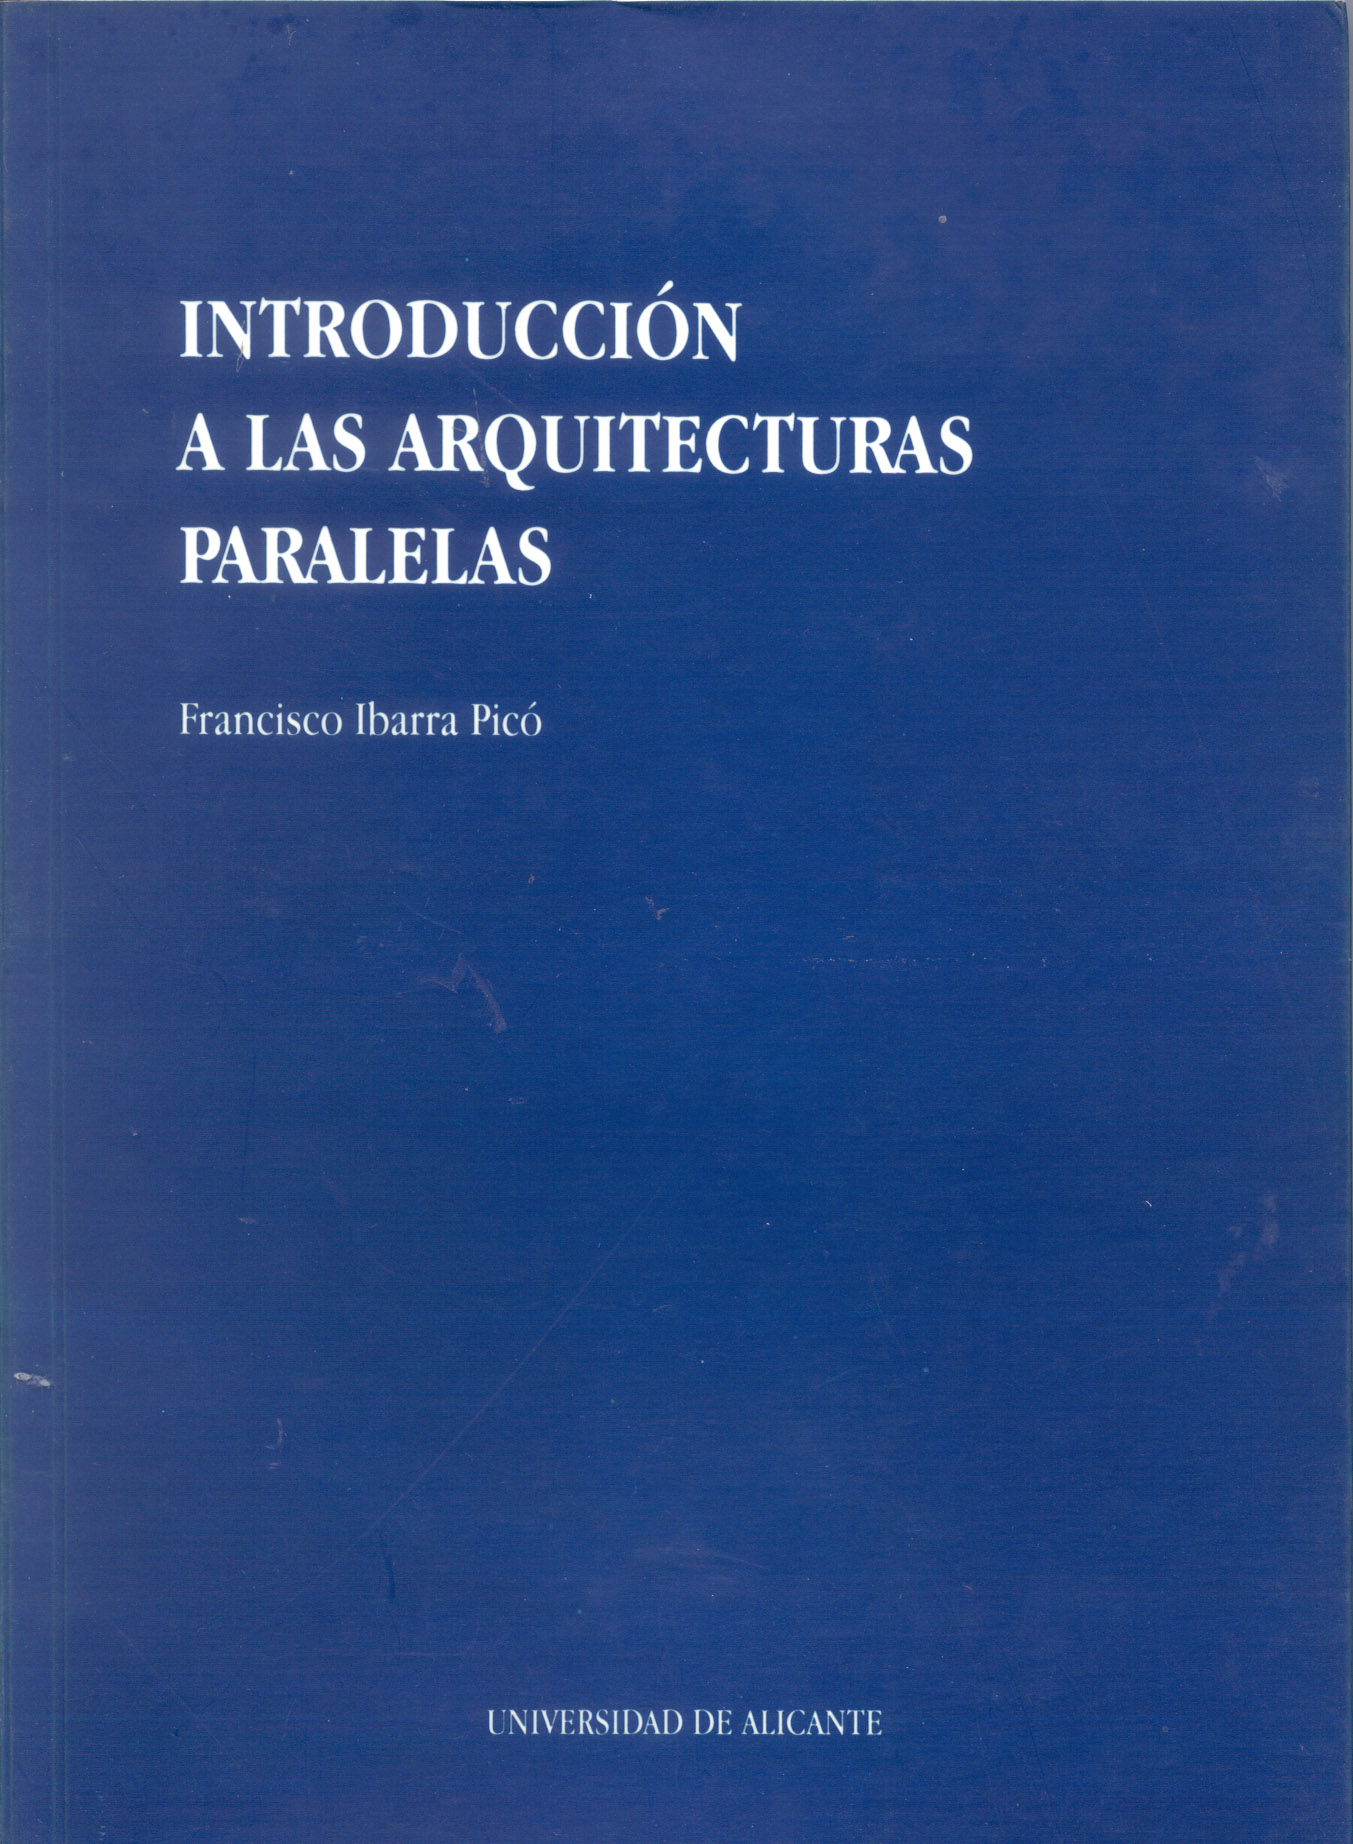 IntroducciÃ³n a las arquitecturas paralelas